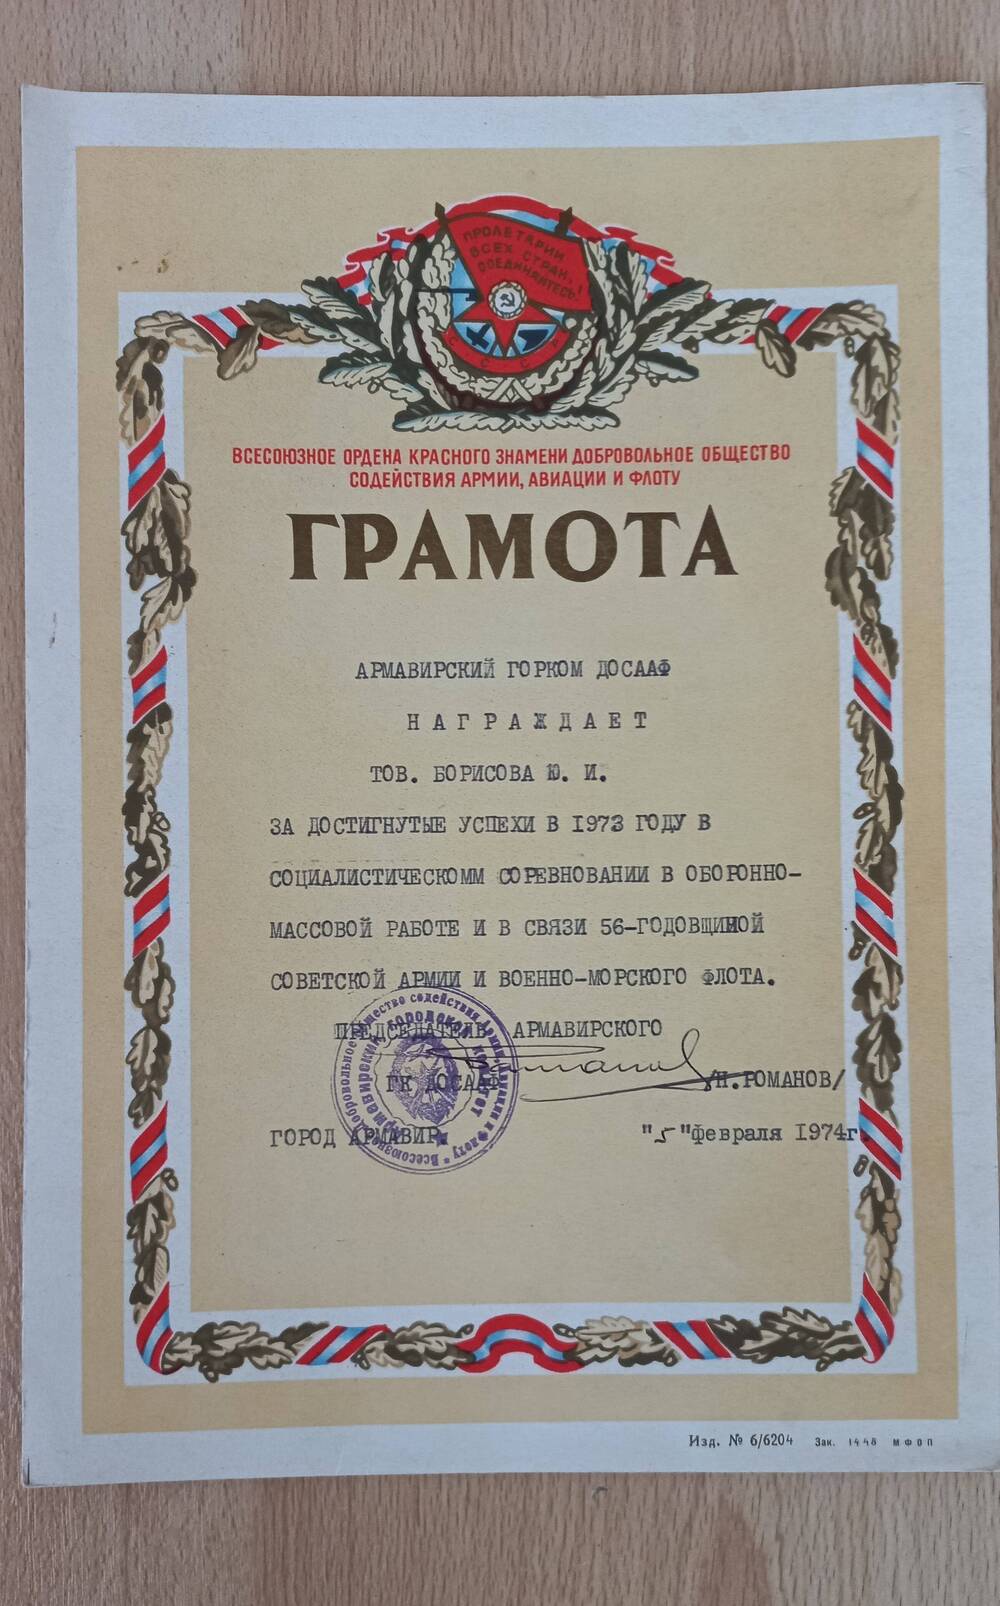 Грамотка Армавирского ГК ДОСААФ (к 56-й годовщине Советской Армии).